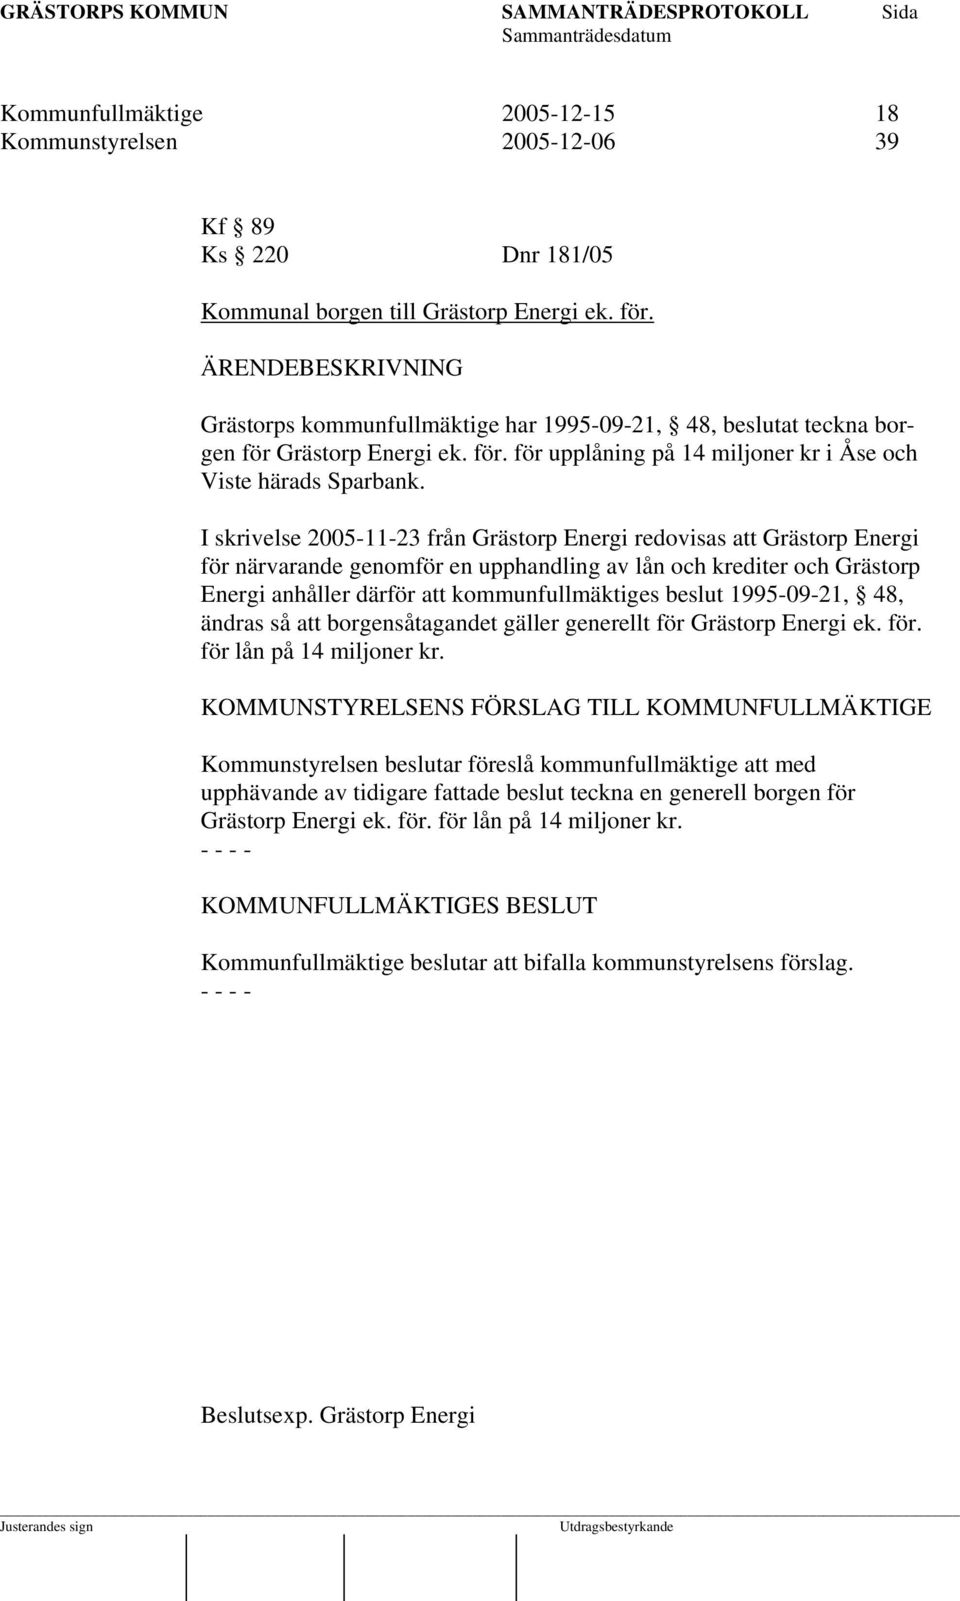 I skrivelse 2005-11-23 från Grästorp Energi redovisas att Grästorp Energi för närvarande genomför en upphandling av lån och krediter och Grästorp Energi anhåller därför att kommunfullmäktiges beslut